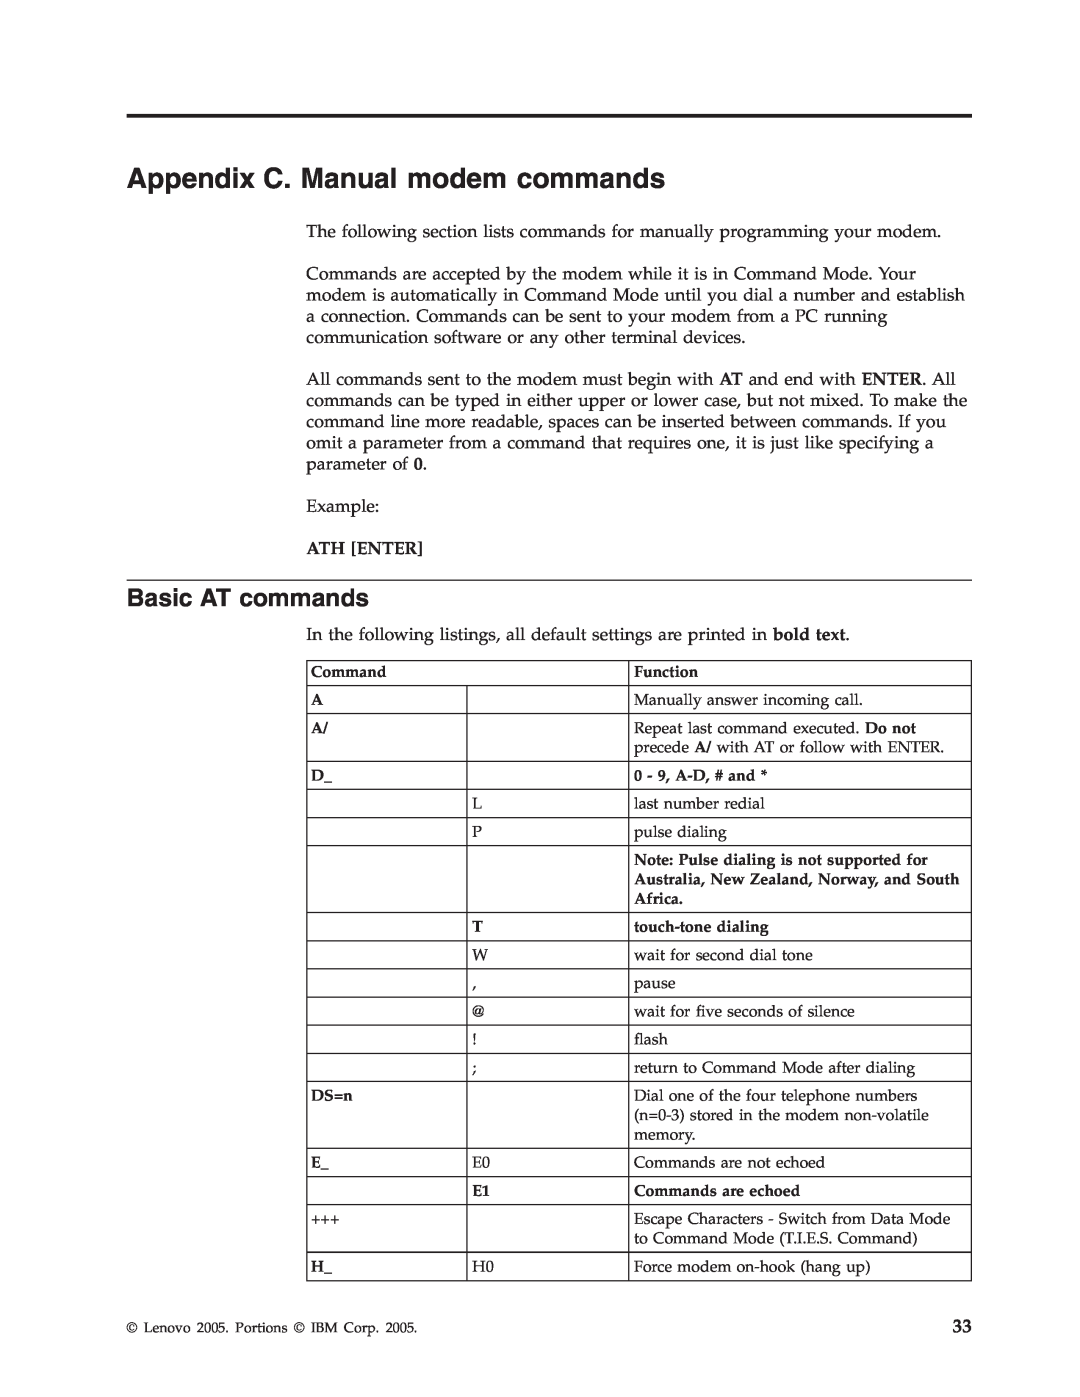 Lenovo 9213, 9212 manual Appendix C. Manual modem commands, Basic AT commands 